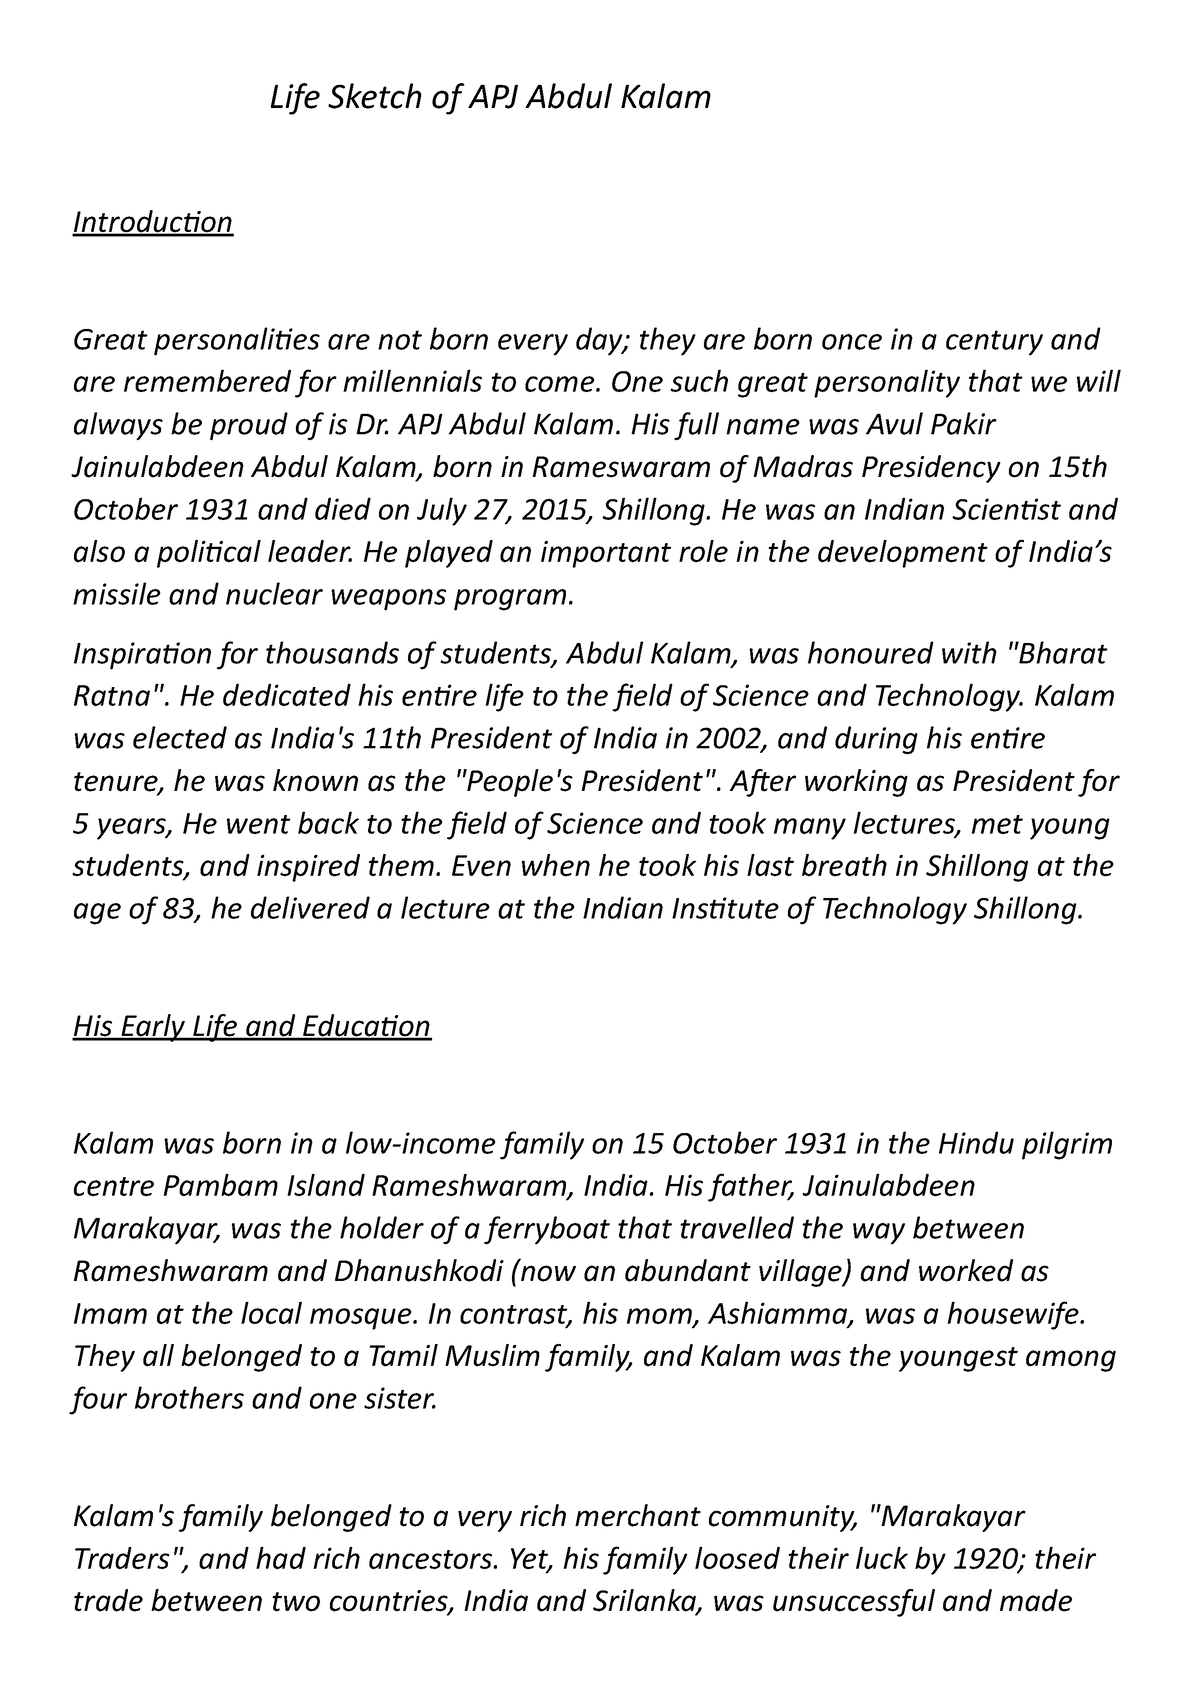 मिसाइल मैन डॉ. ए पी जे अब्दुल कलाम का संपूर्ण जीवन परिचय - Leverage Edu